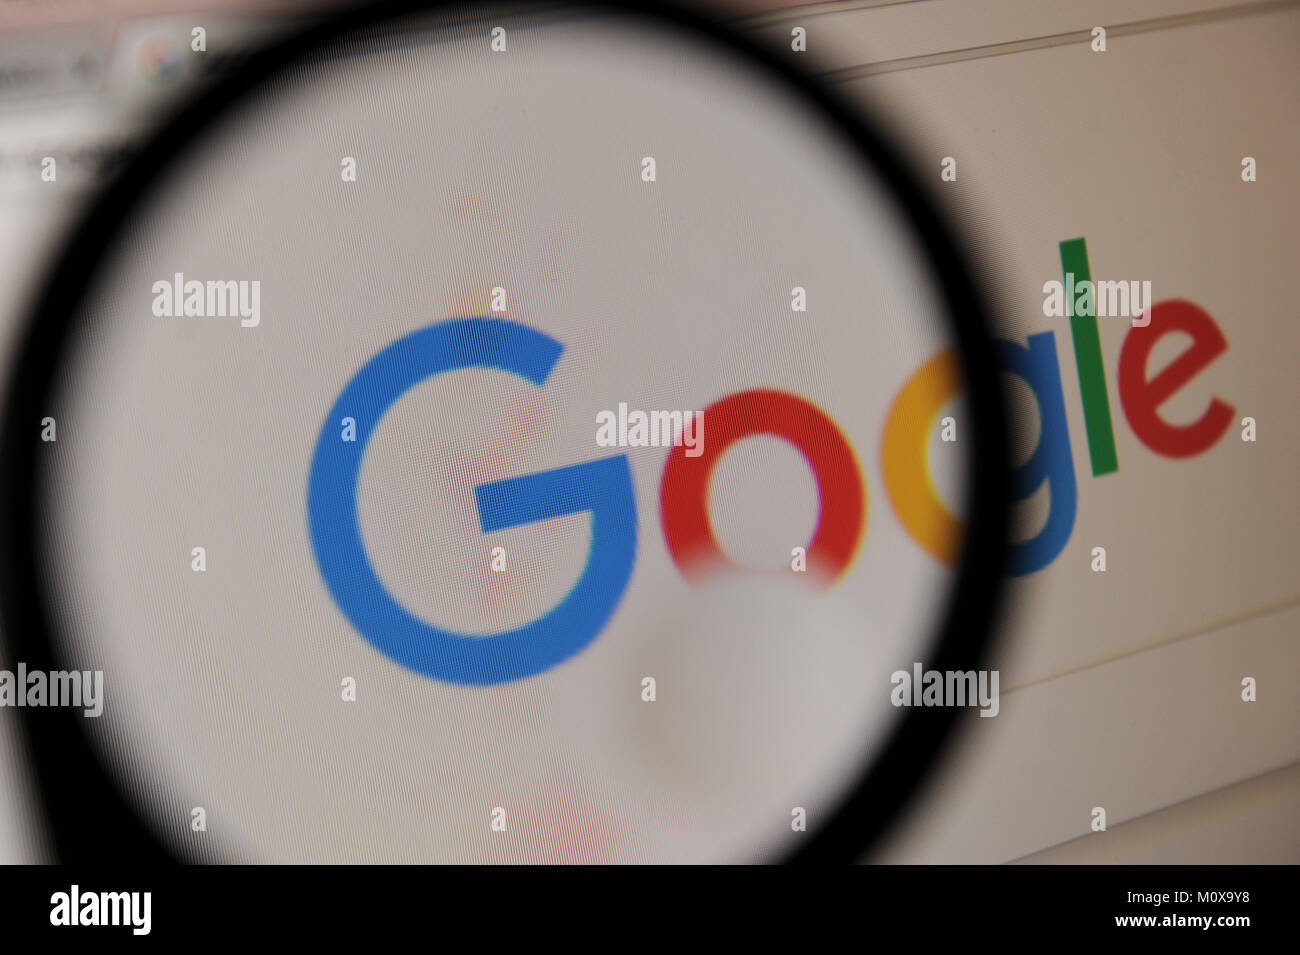 The Google logo seen through a magnifying glass Stock Photo